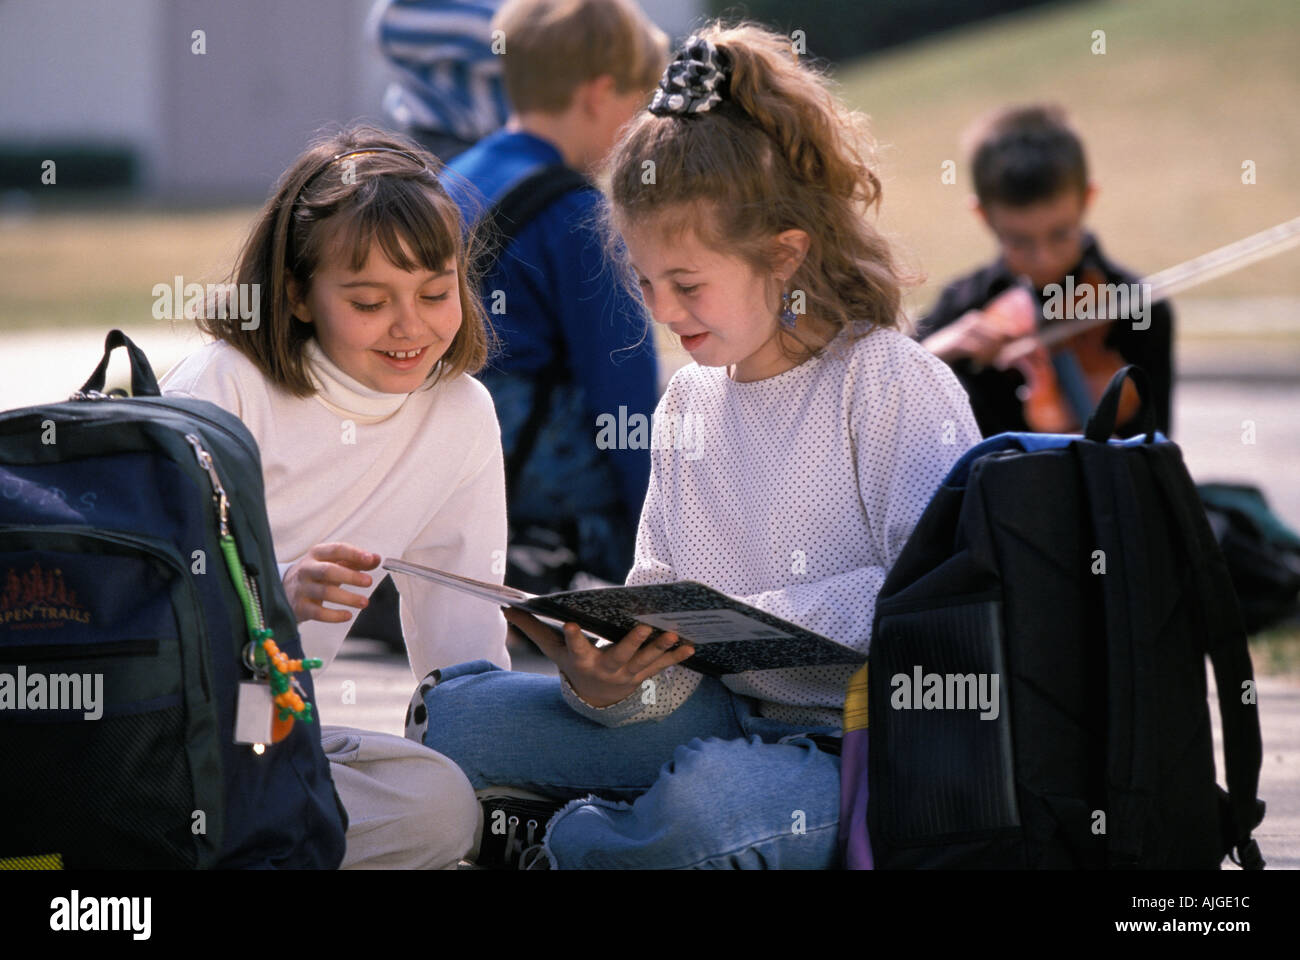 Les élèves de sexe féminin de race blanche à faire leurs devoirs avec leurs ordinateurs portables tout en restant assis dans l'herbe avec leurs sacs à dos Banque D'Images